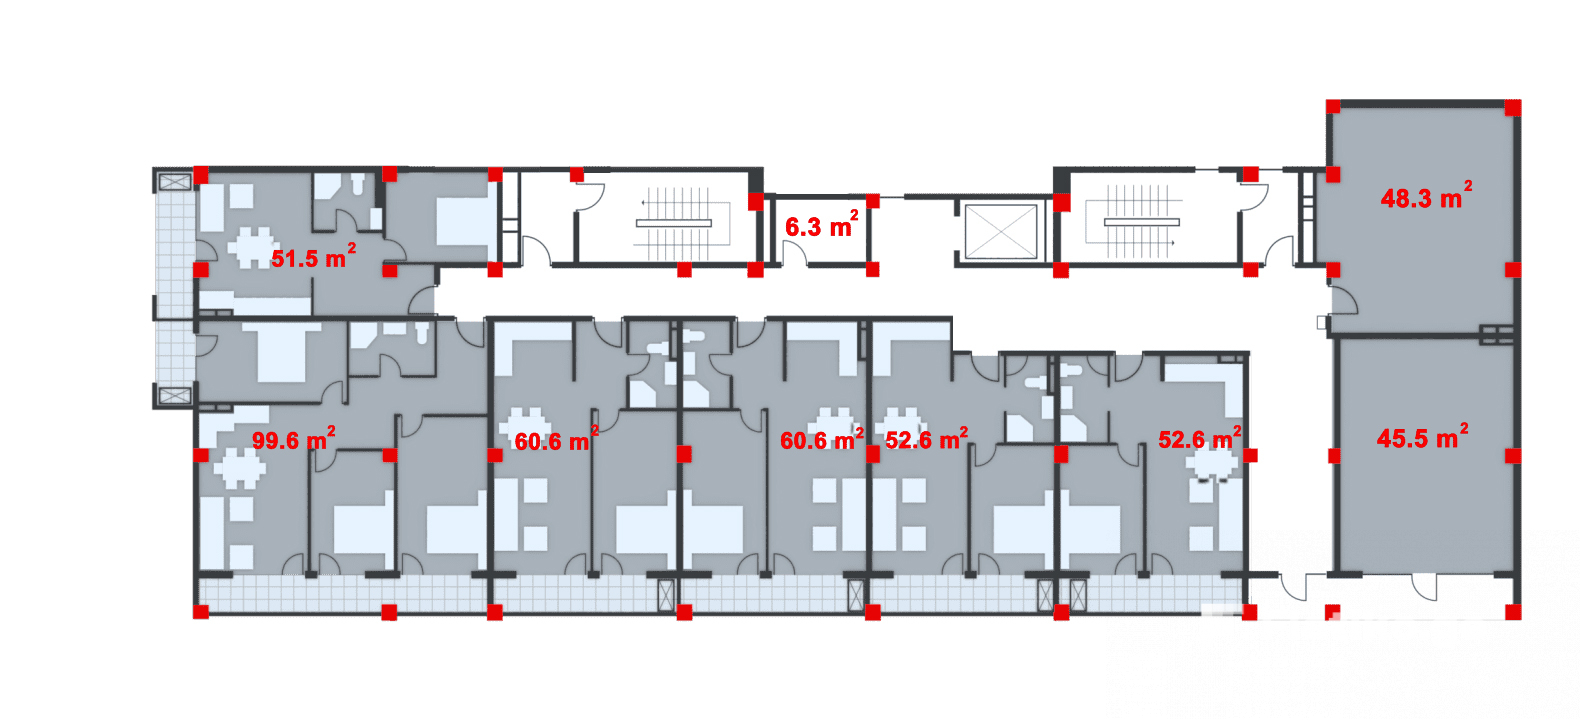 Floor Plan -2, Block A